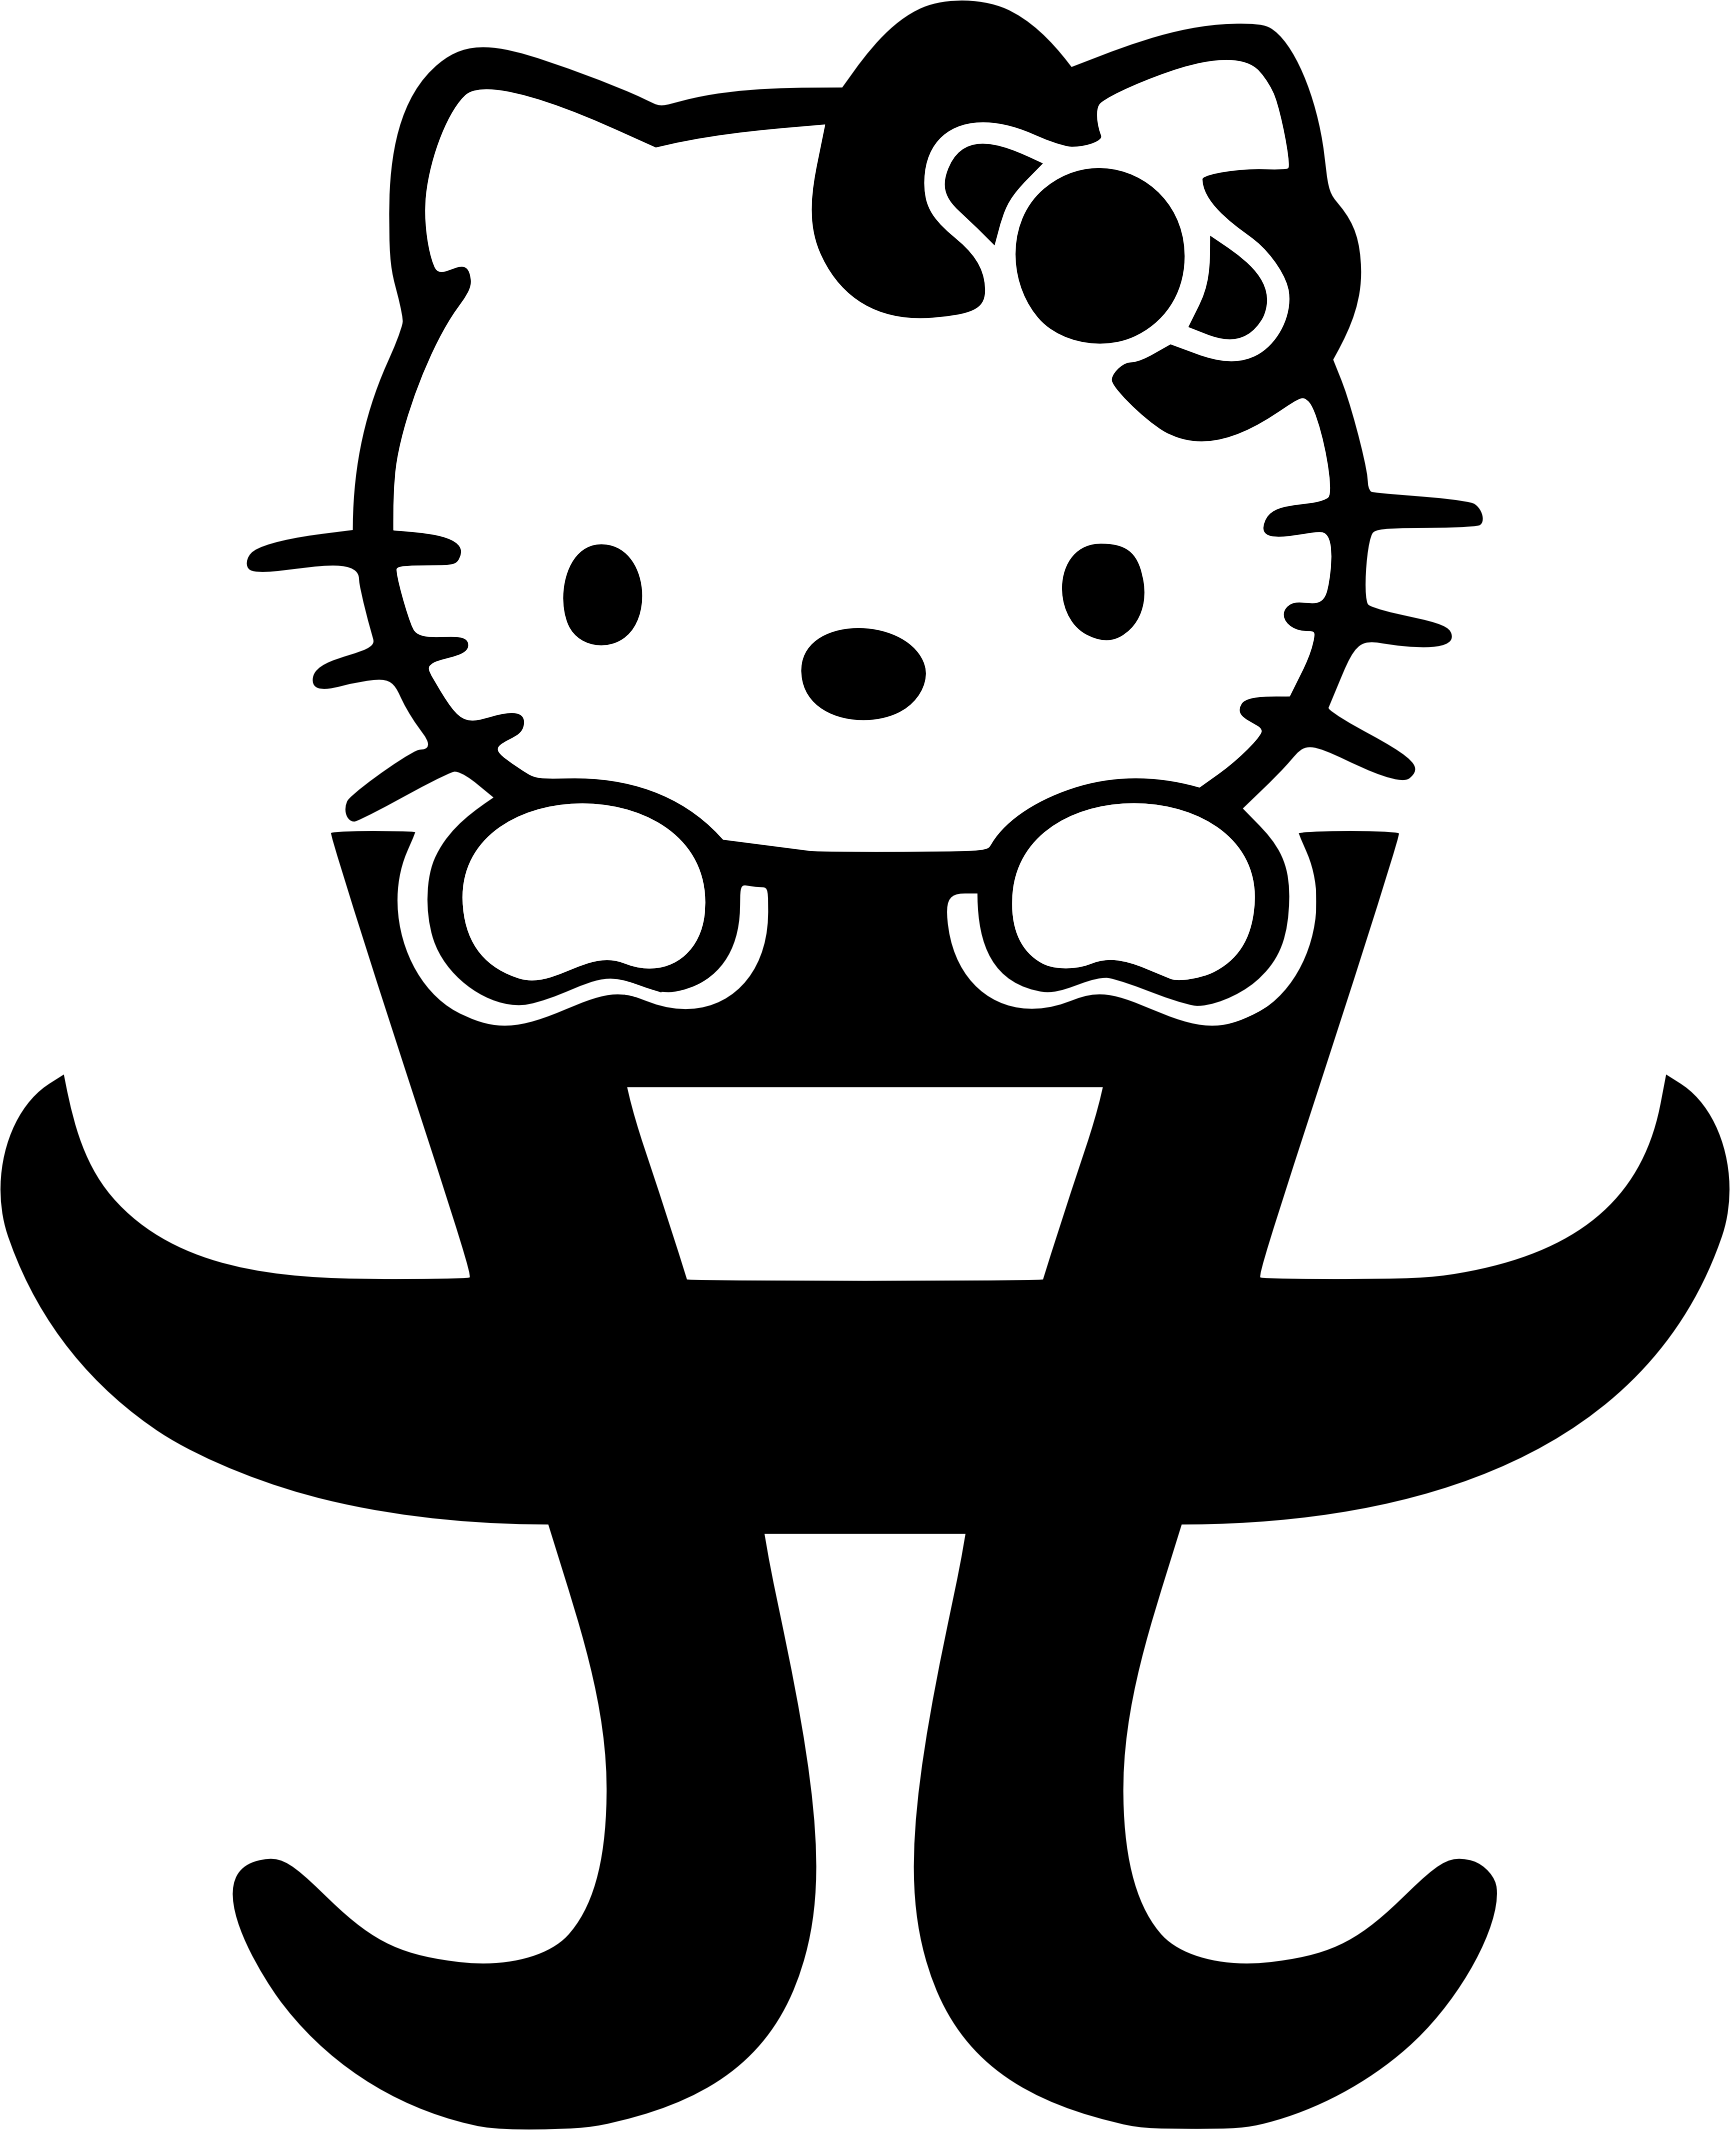 Ayu Logo - With Hello Kitty - Ayumi Hamasaki Photo (27663283) - Fanpop